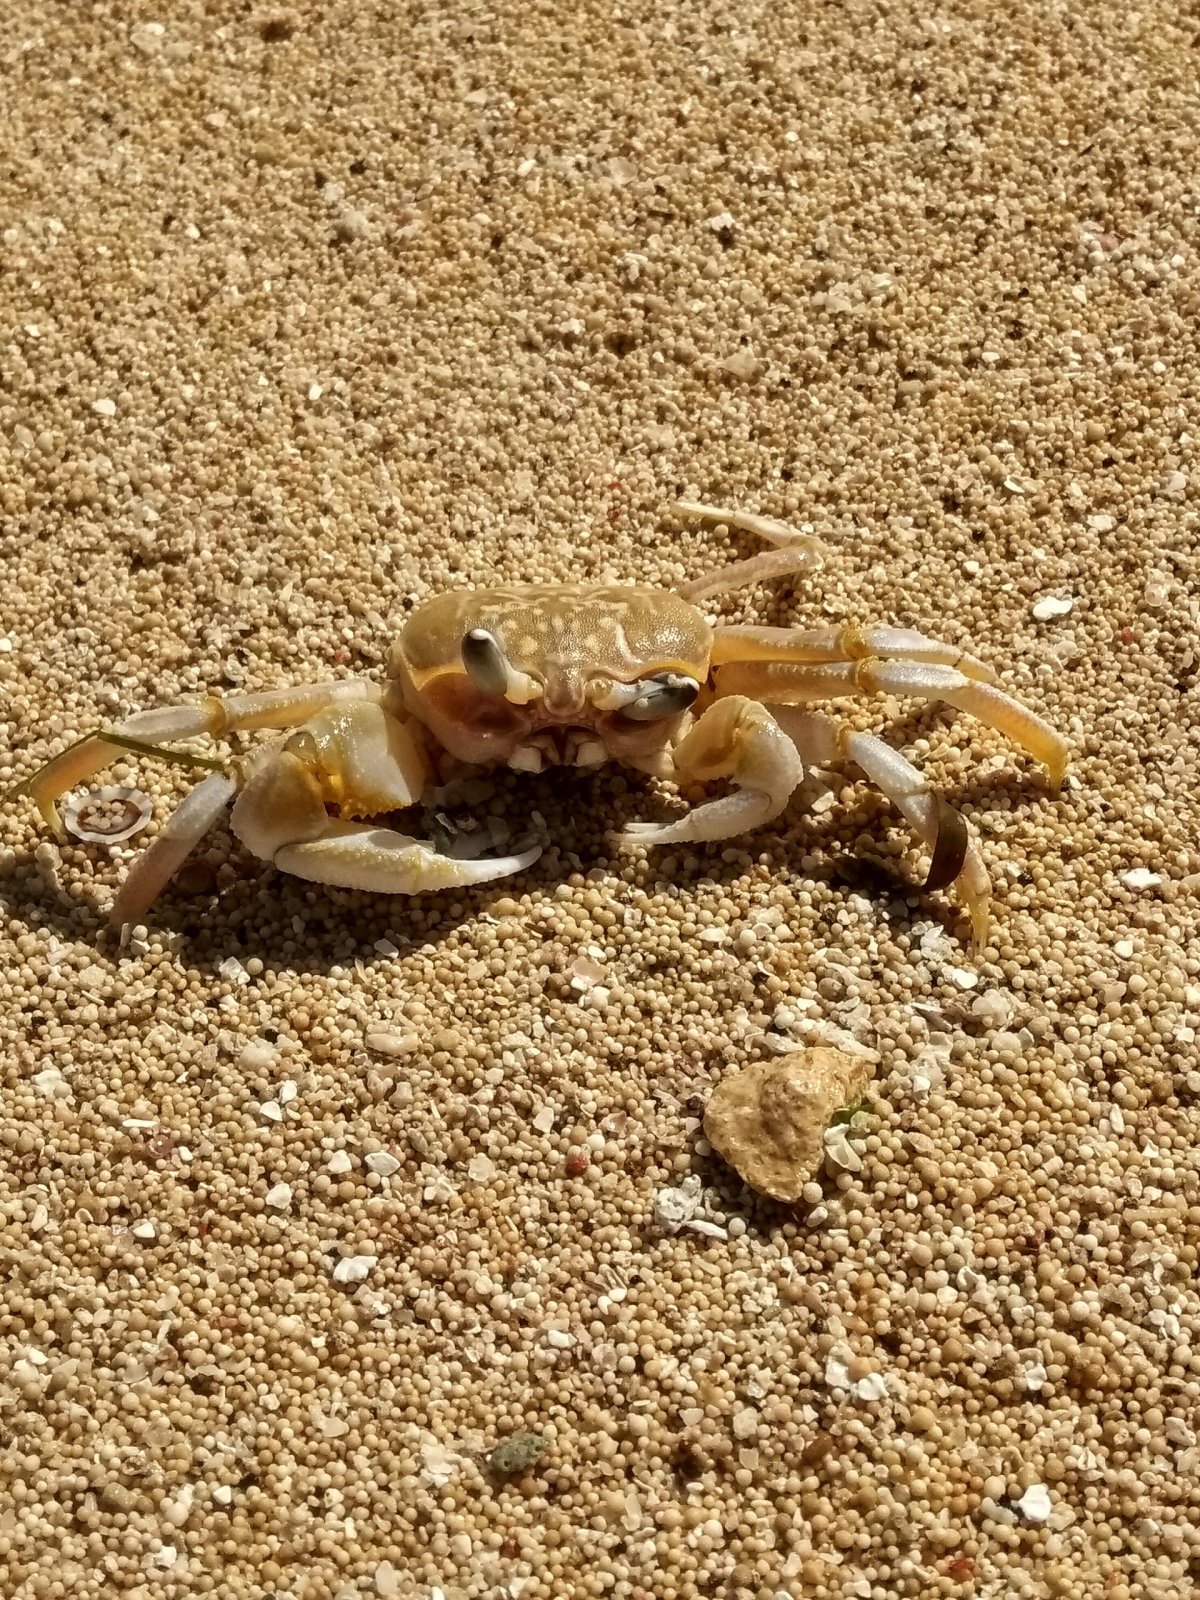 Krabík na pláži